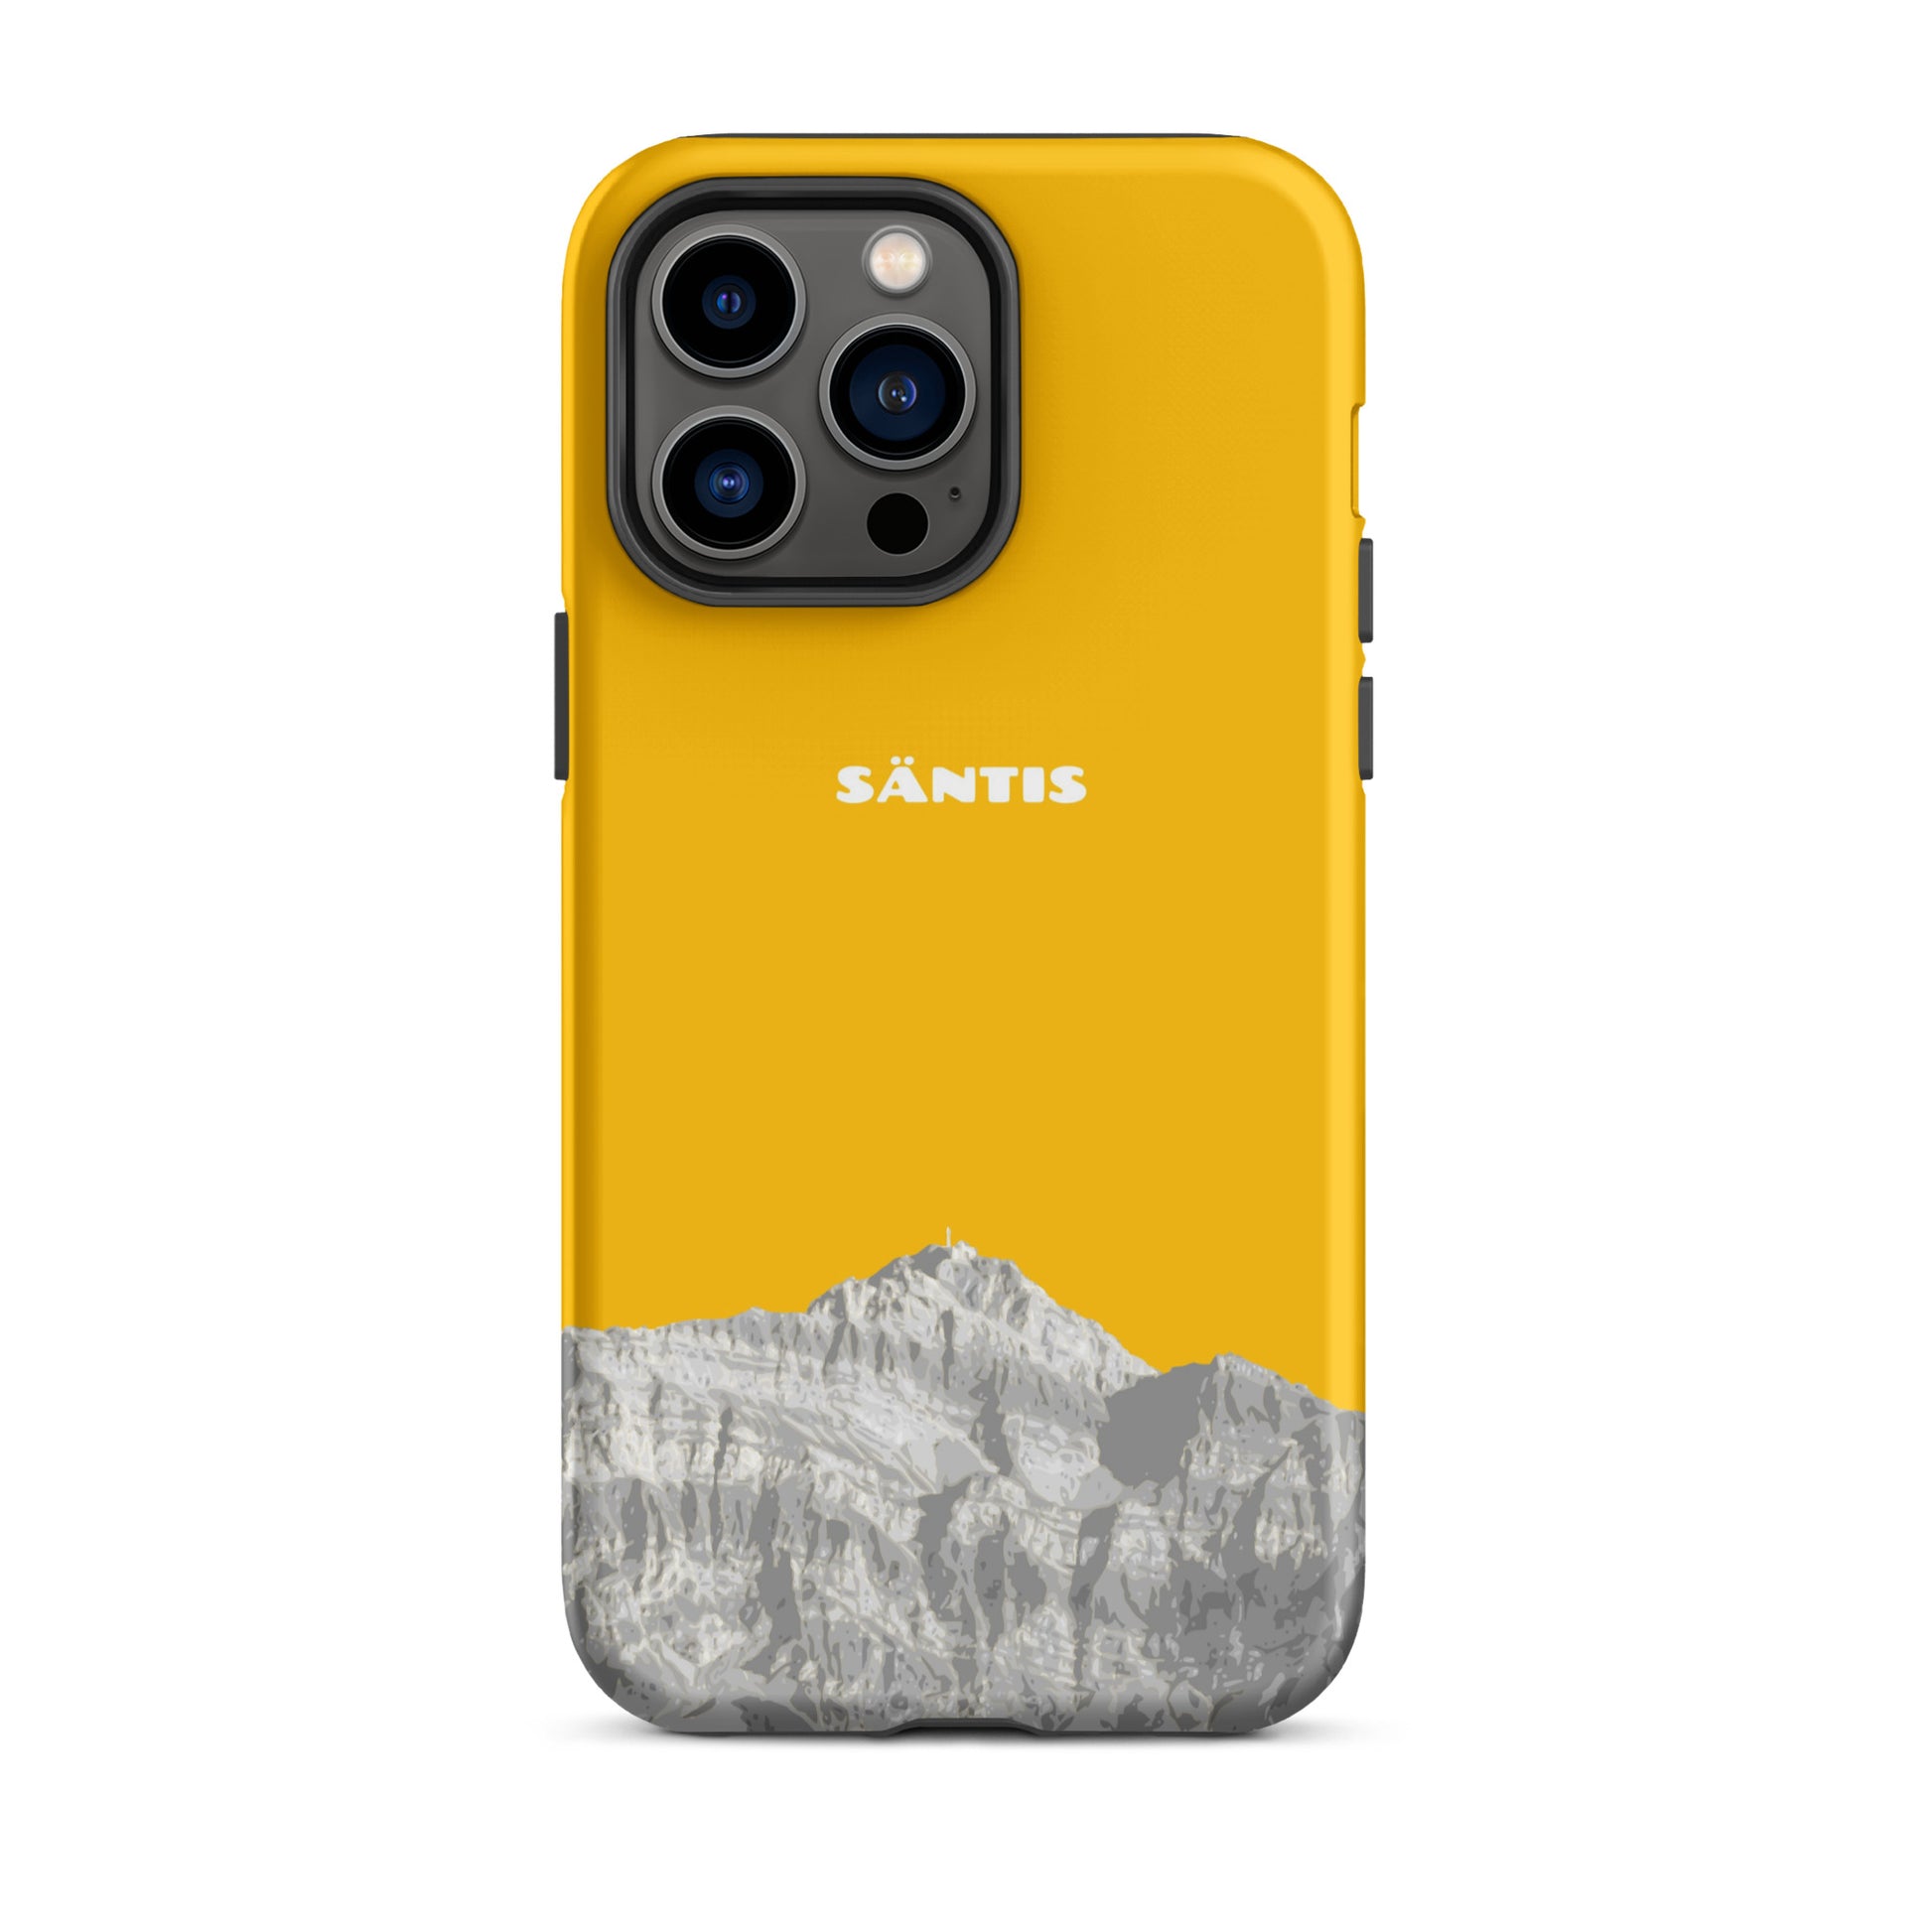 Hülle für das iPhone 14 Pro Max von Apple in der Farbe Goldgelb, dass den Säntis im Alpstein zeigt.